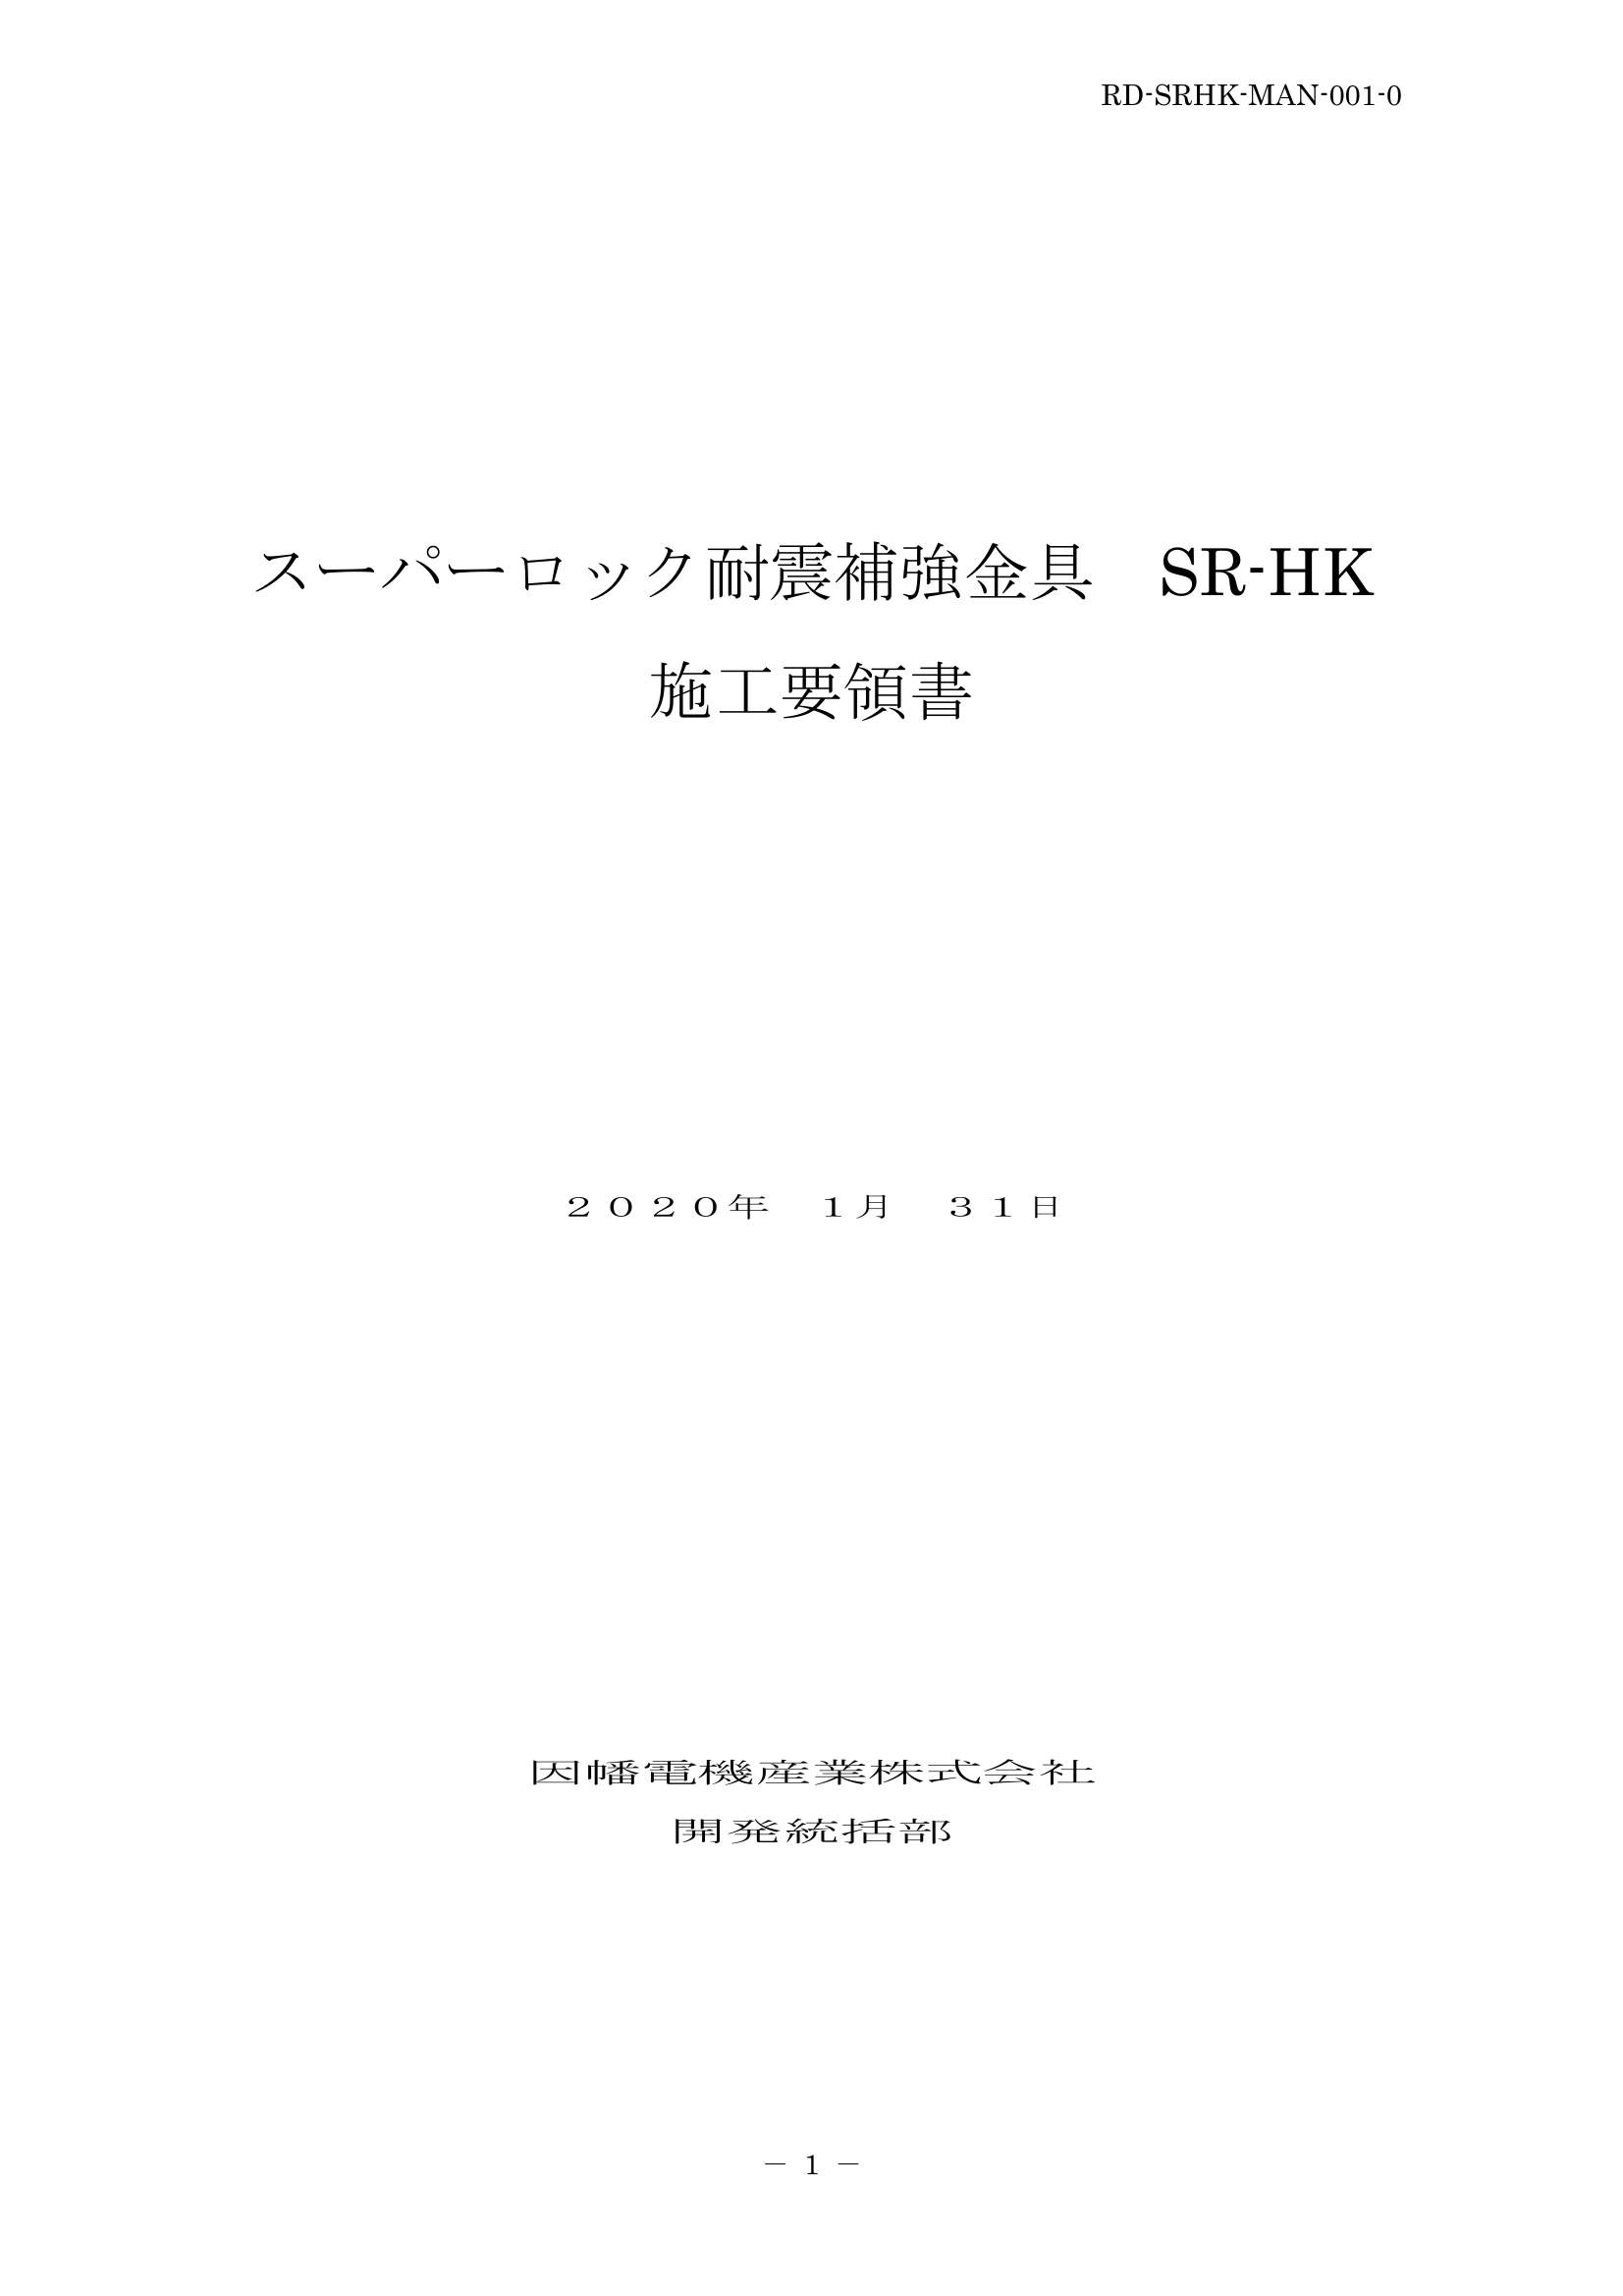 SR-HK_施工要領手順書_20200131.pdf